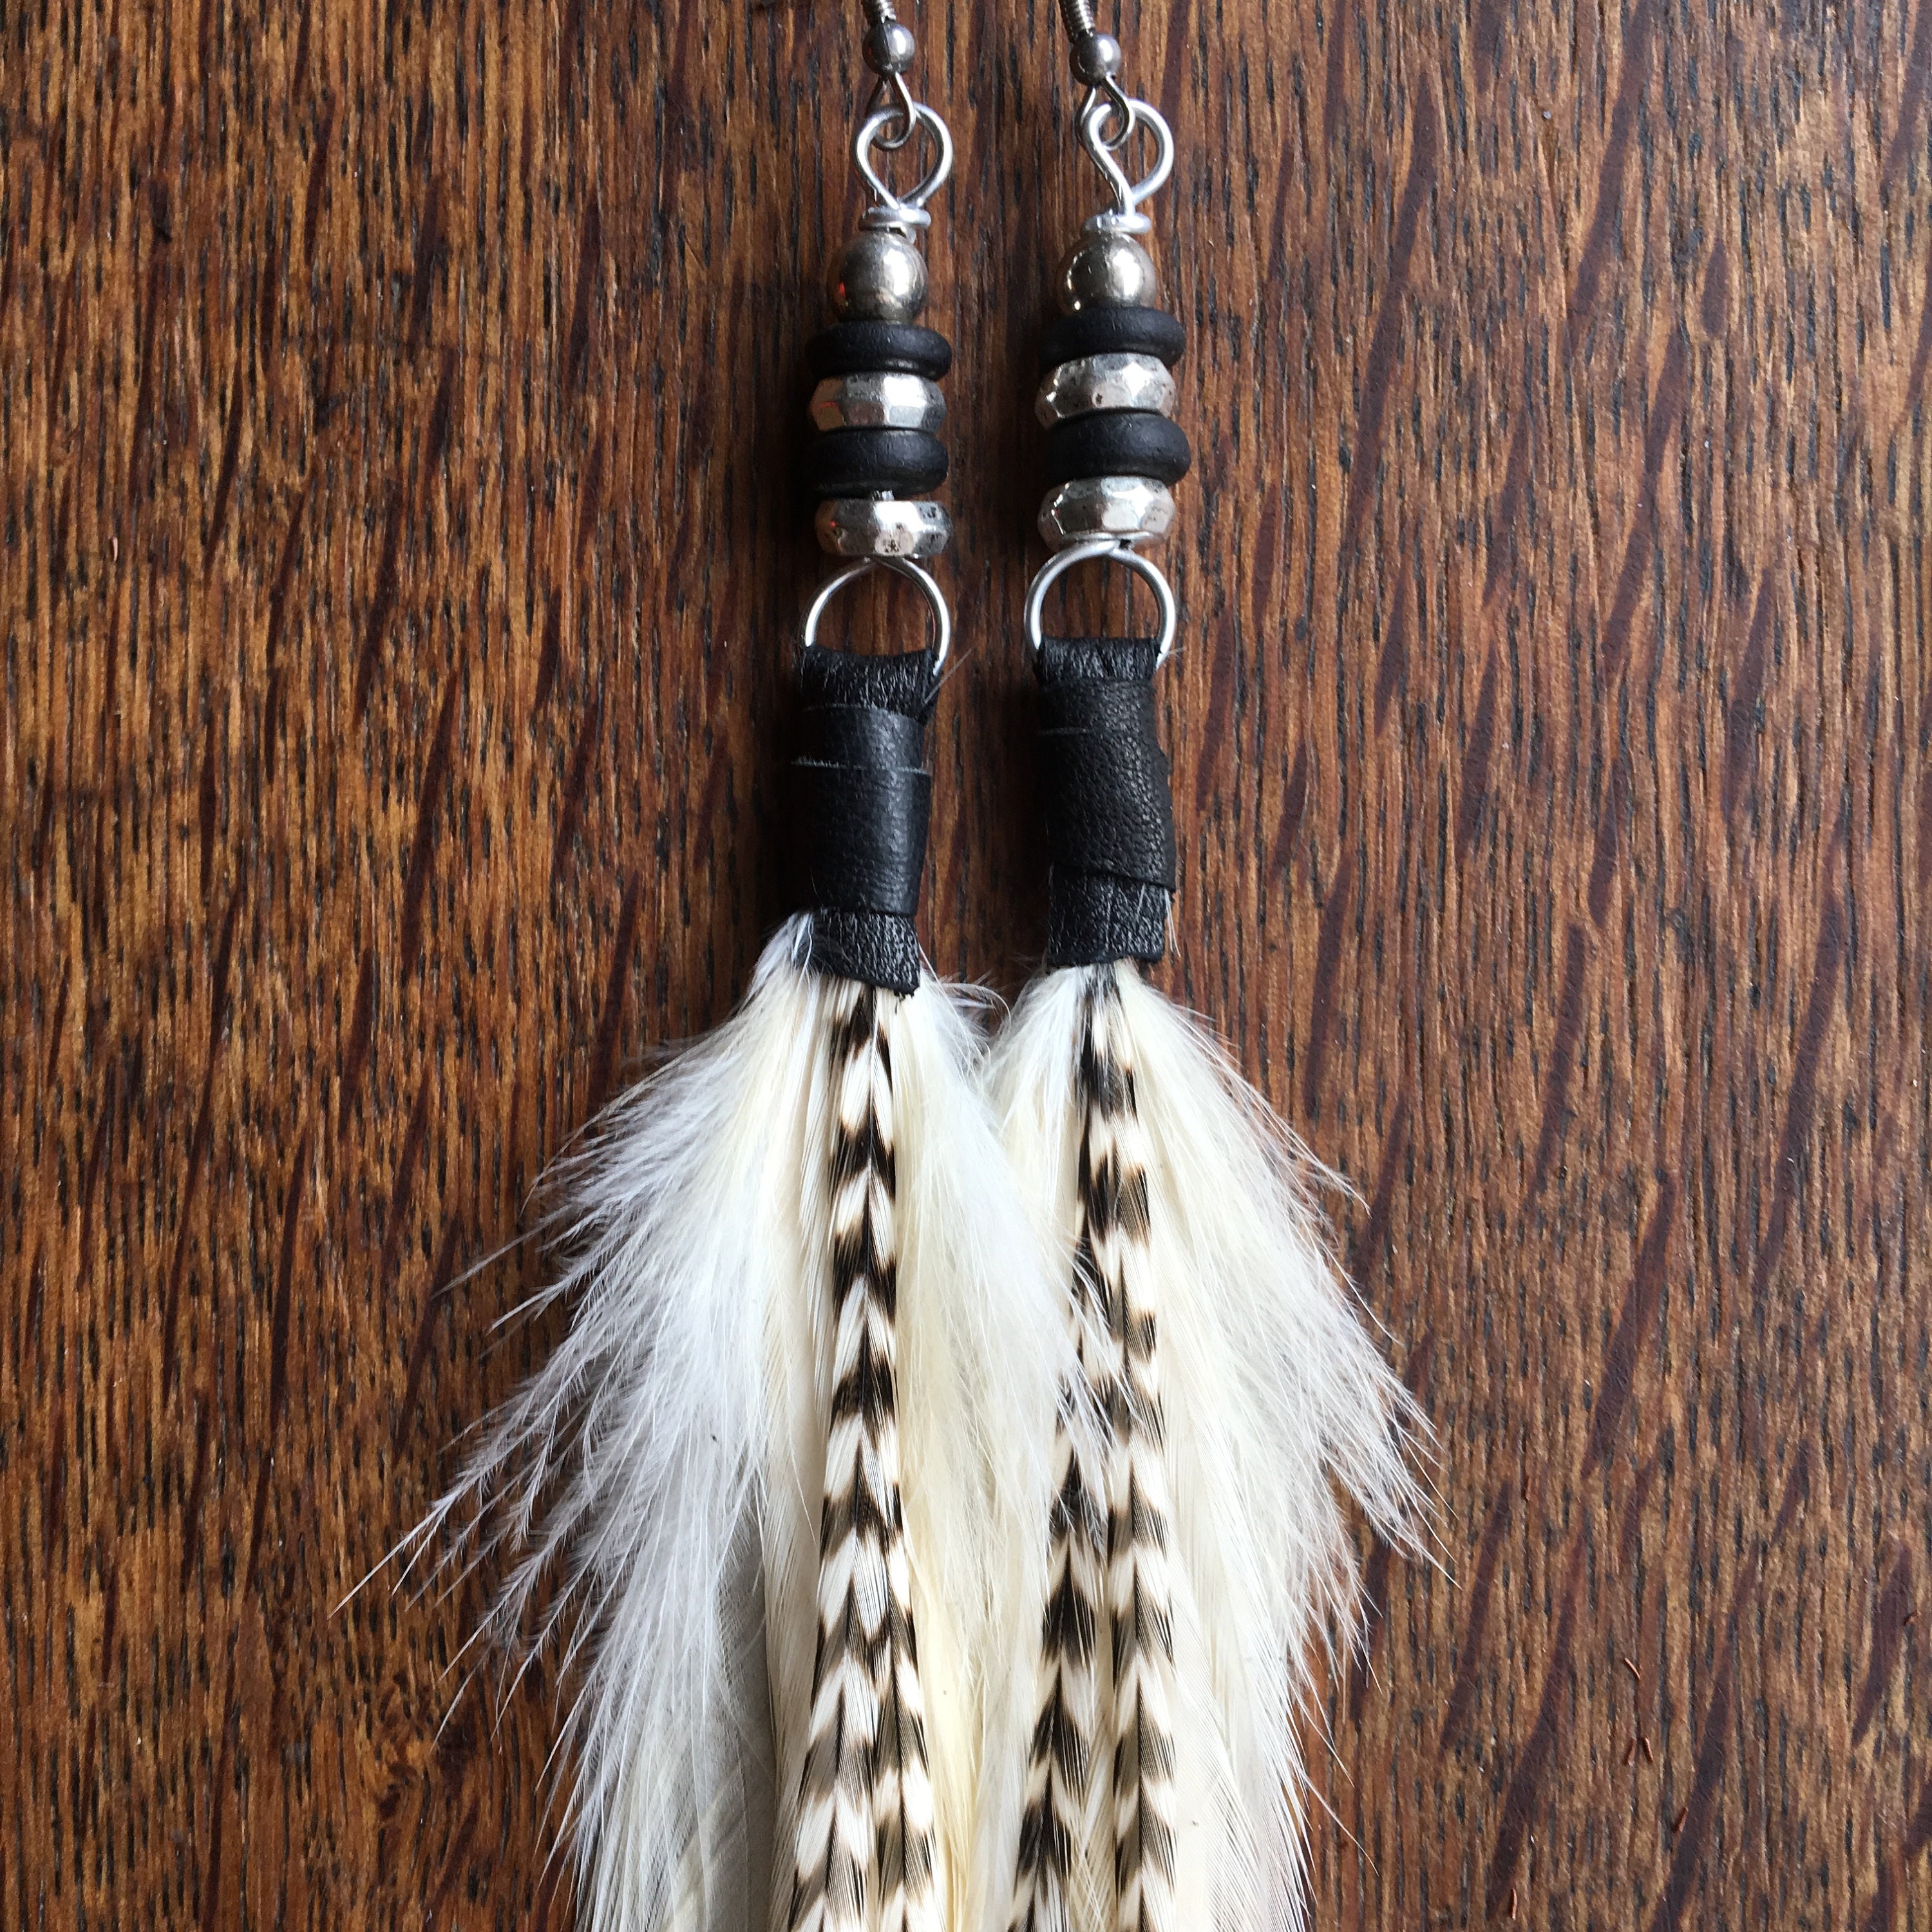 Real Feather Earrings / Bohemian Earrings / Wedding Jewellery/ | Etsy